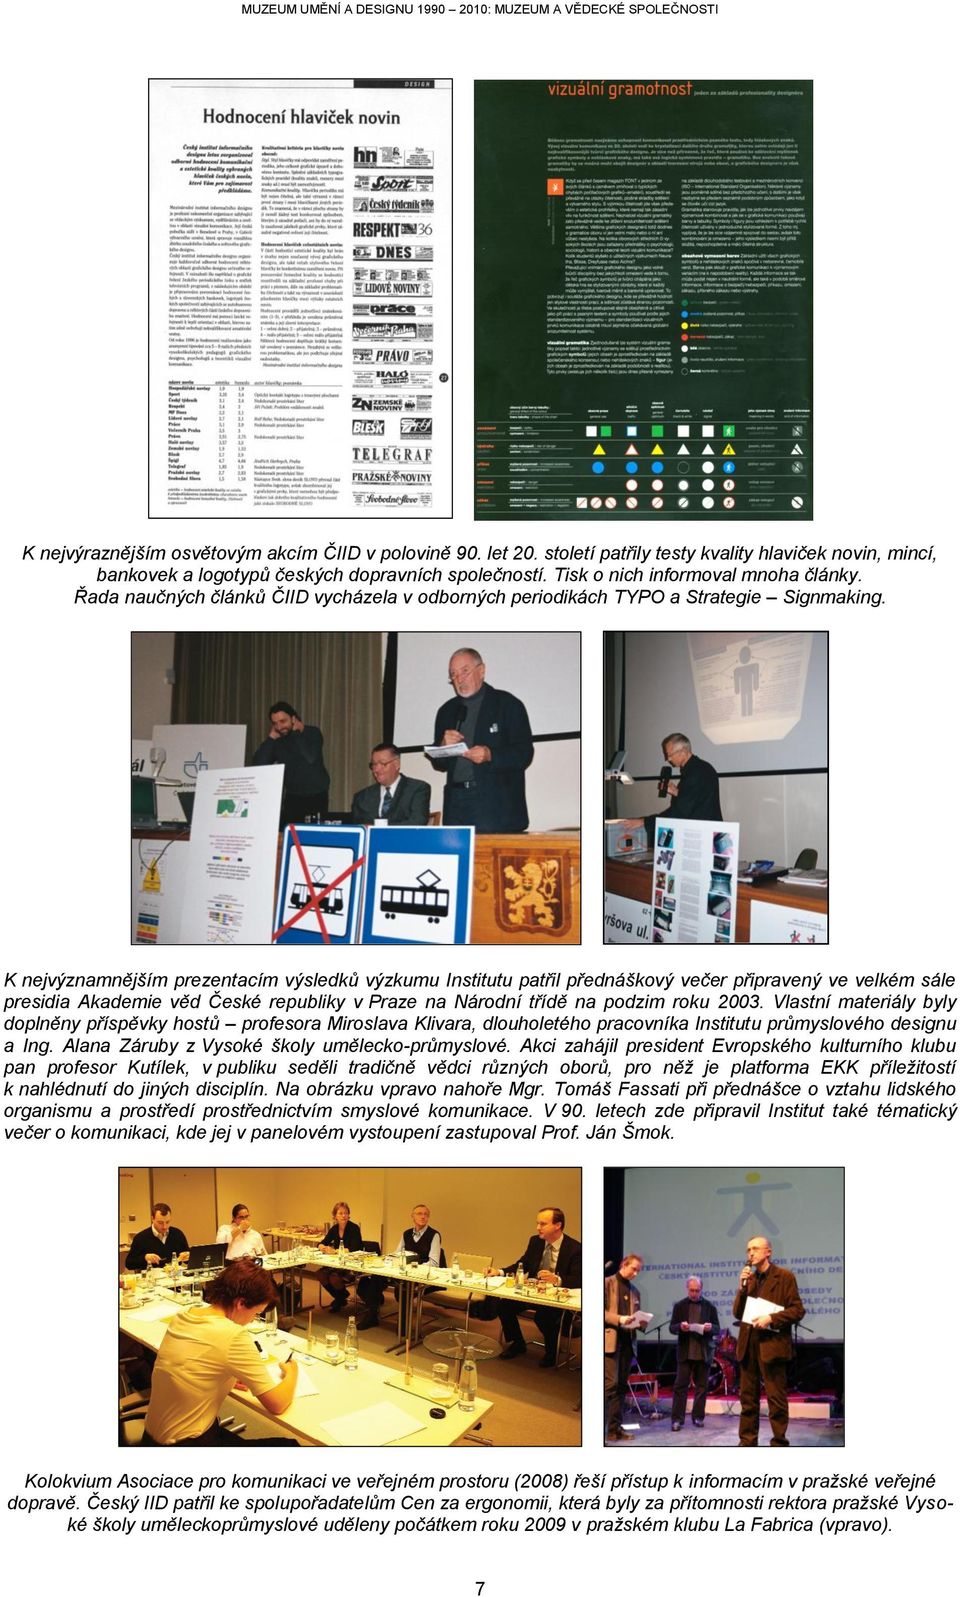 K nejvýznamnějším prezentacím výsledků výzkumu Institutu patřil přednáškový večer připravený ve velkém sále presidia Akademie věd České republiky v Praze na Národní třídě na podzim roku 2003.